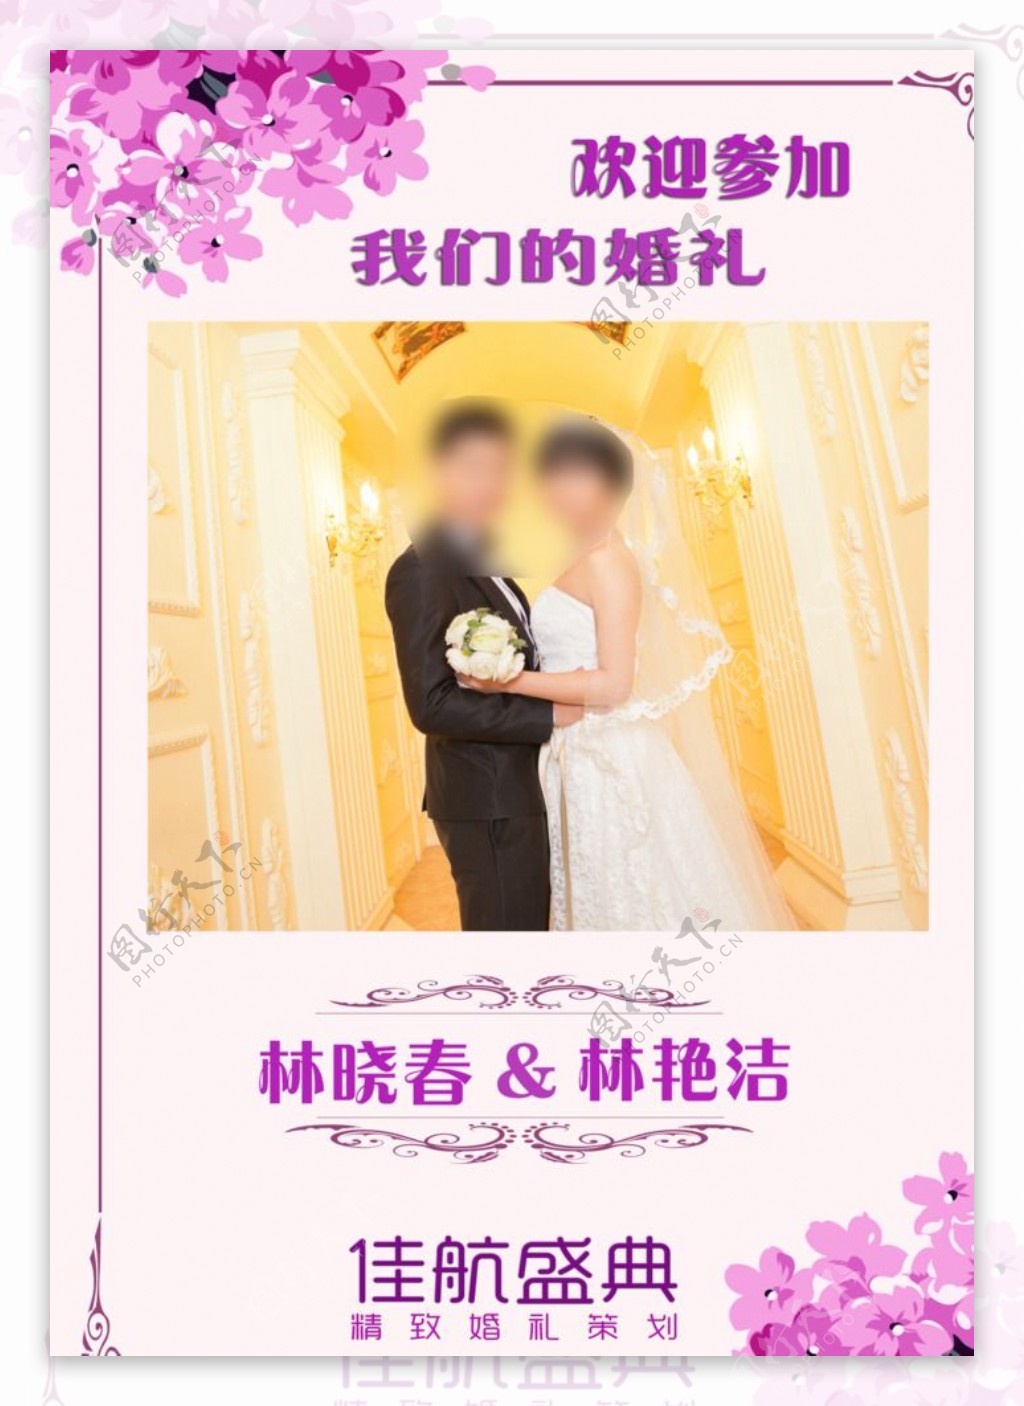 婚礼logo婚礼水牌图片